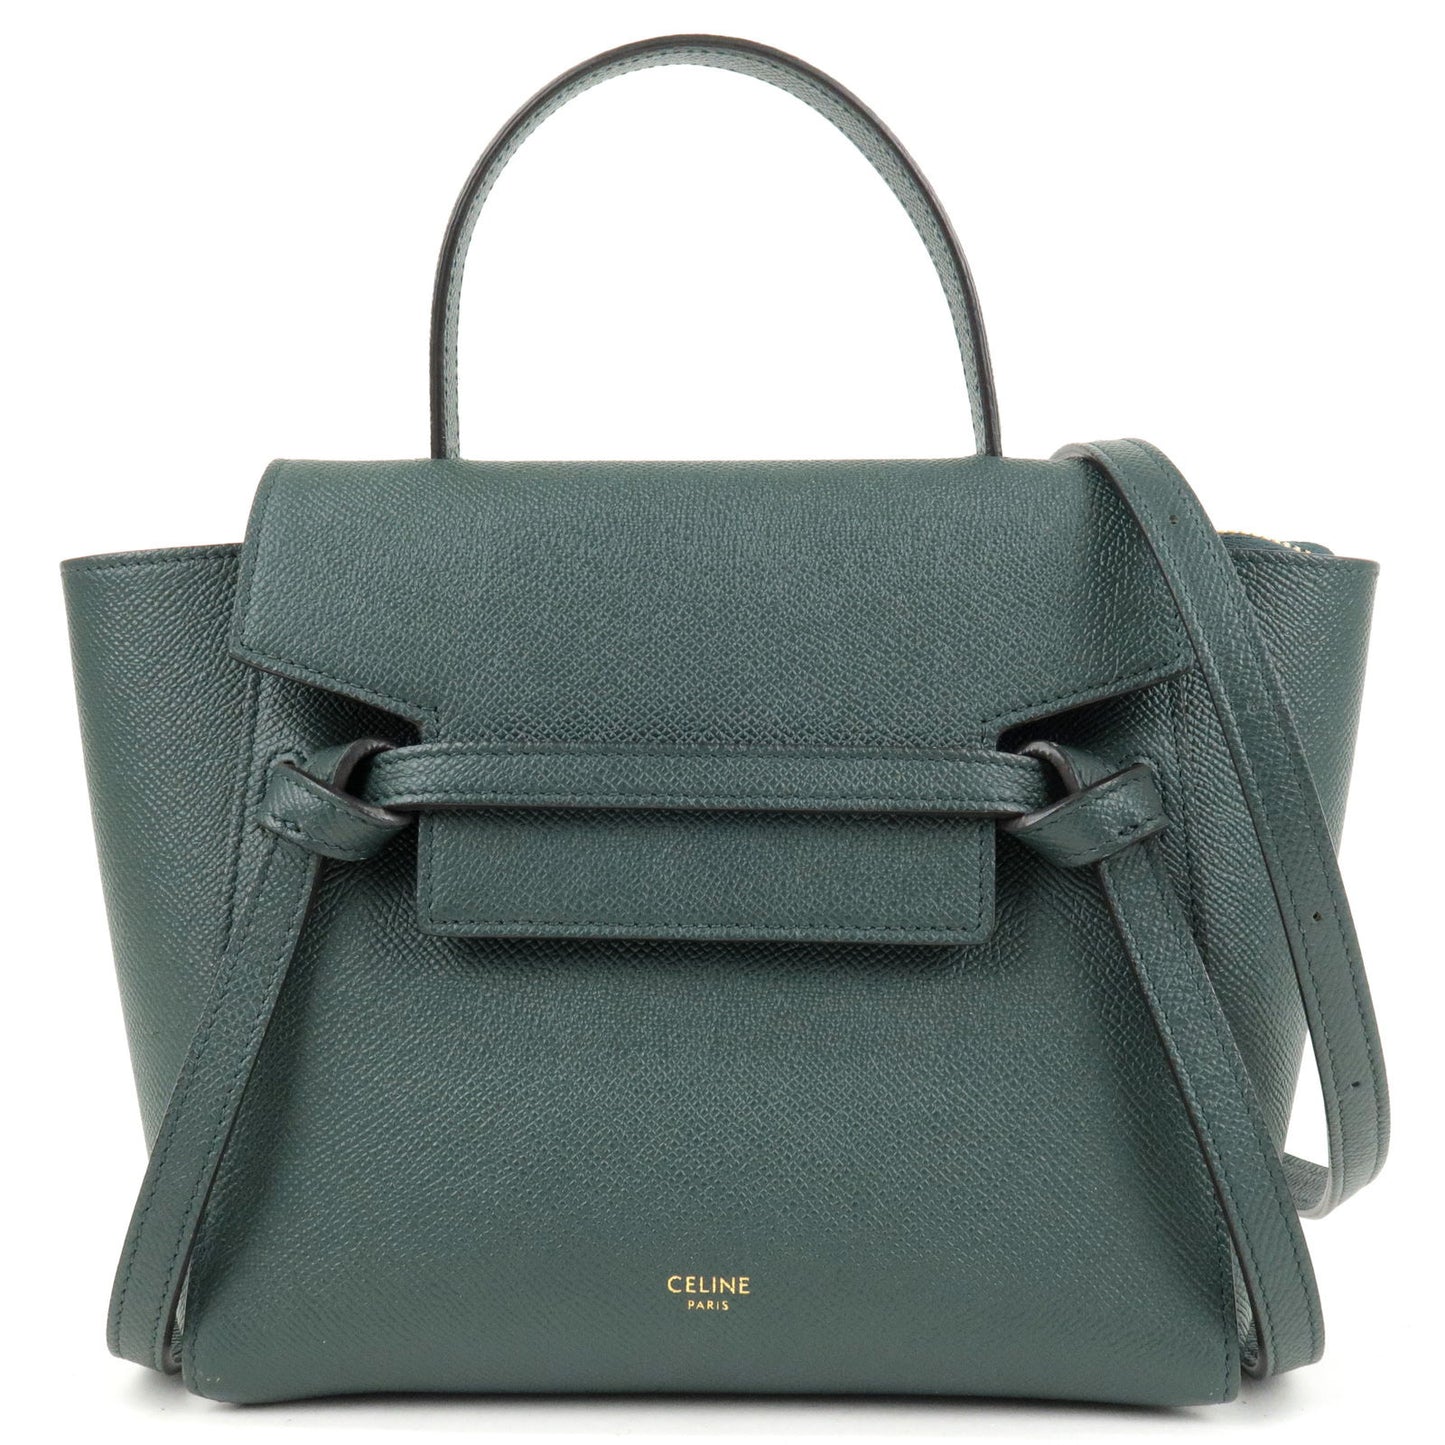 CELINE-Leather-Belt-Bag-Nano-2Way-Bag-Hand-Bag-Green-18900